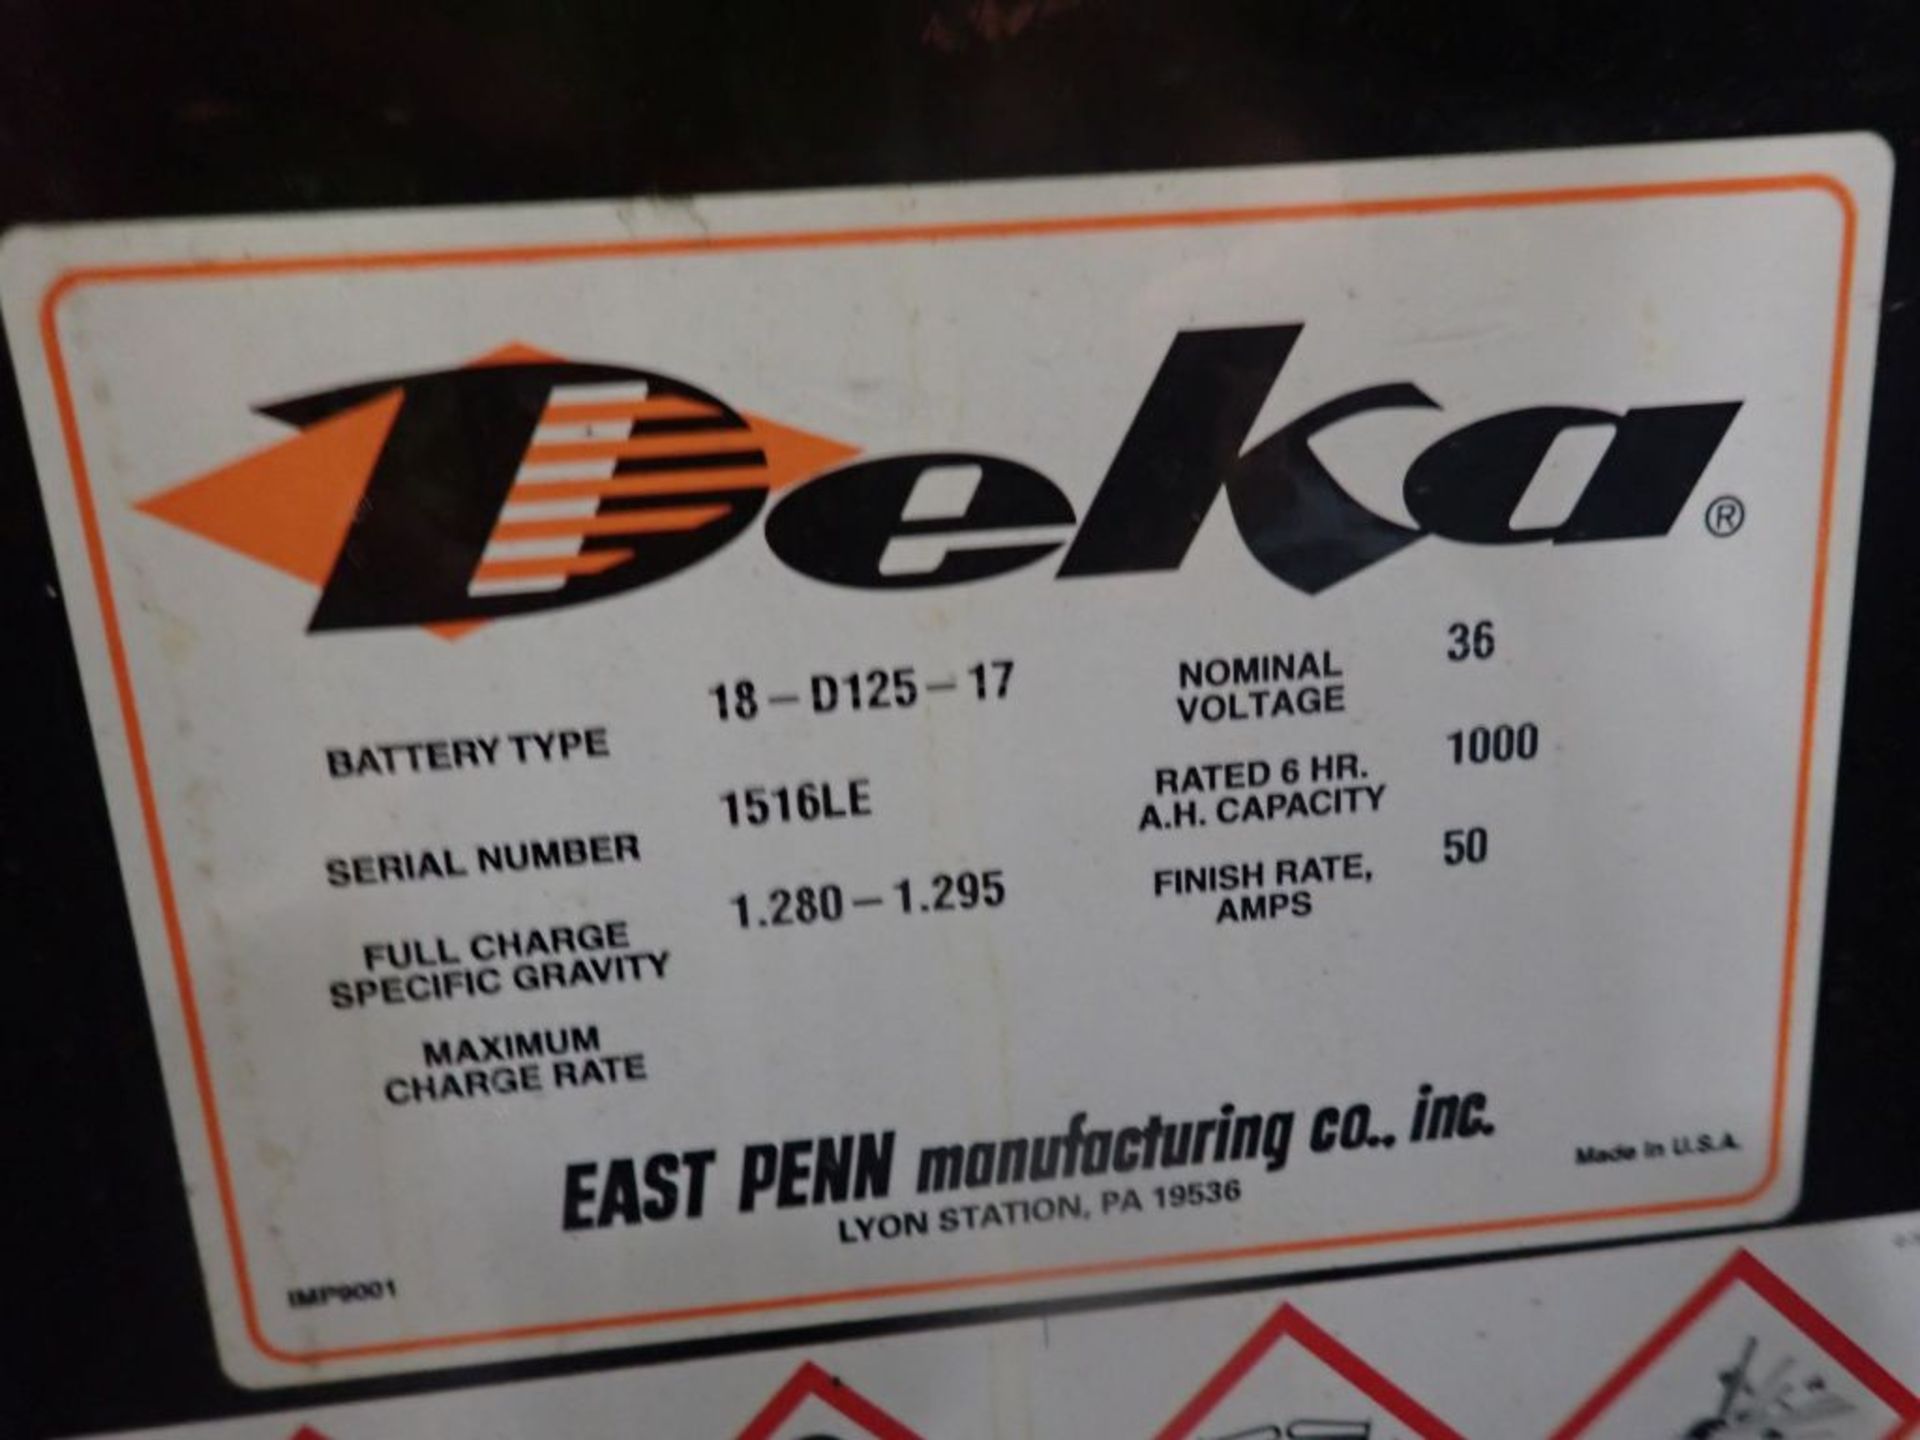 Deka 36V Forklift Battery - 36V; Type 18-D125-17; Tag: 218351; Lot Loading Fee: $30 - Image 3 of 3